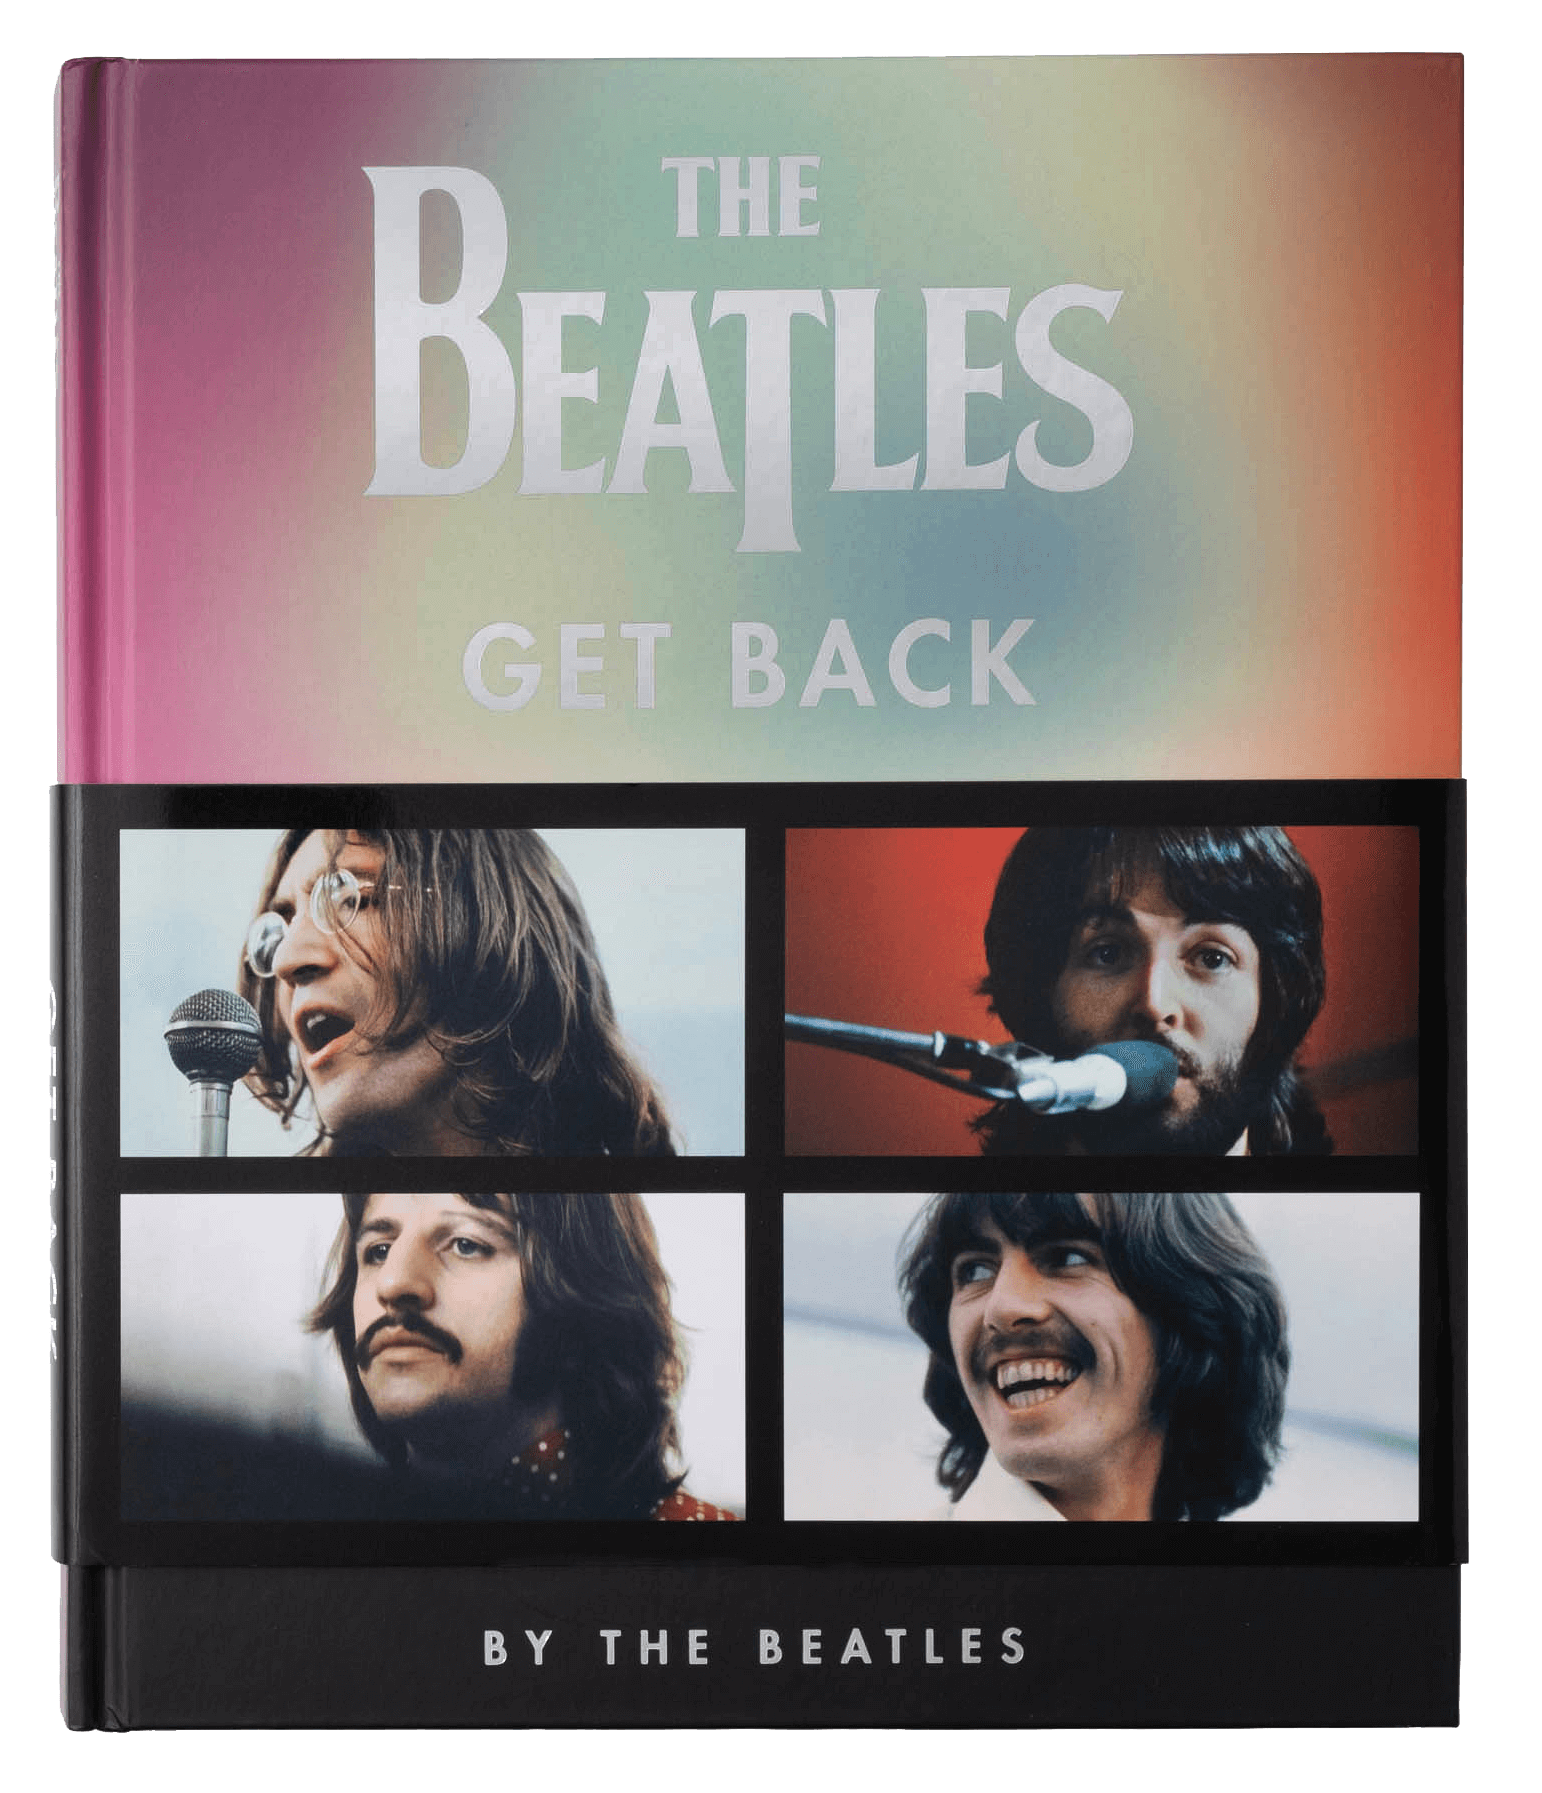 The Beatles-Get Back PR